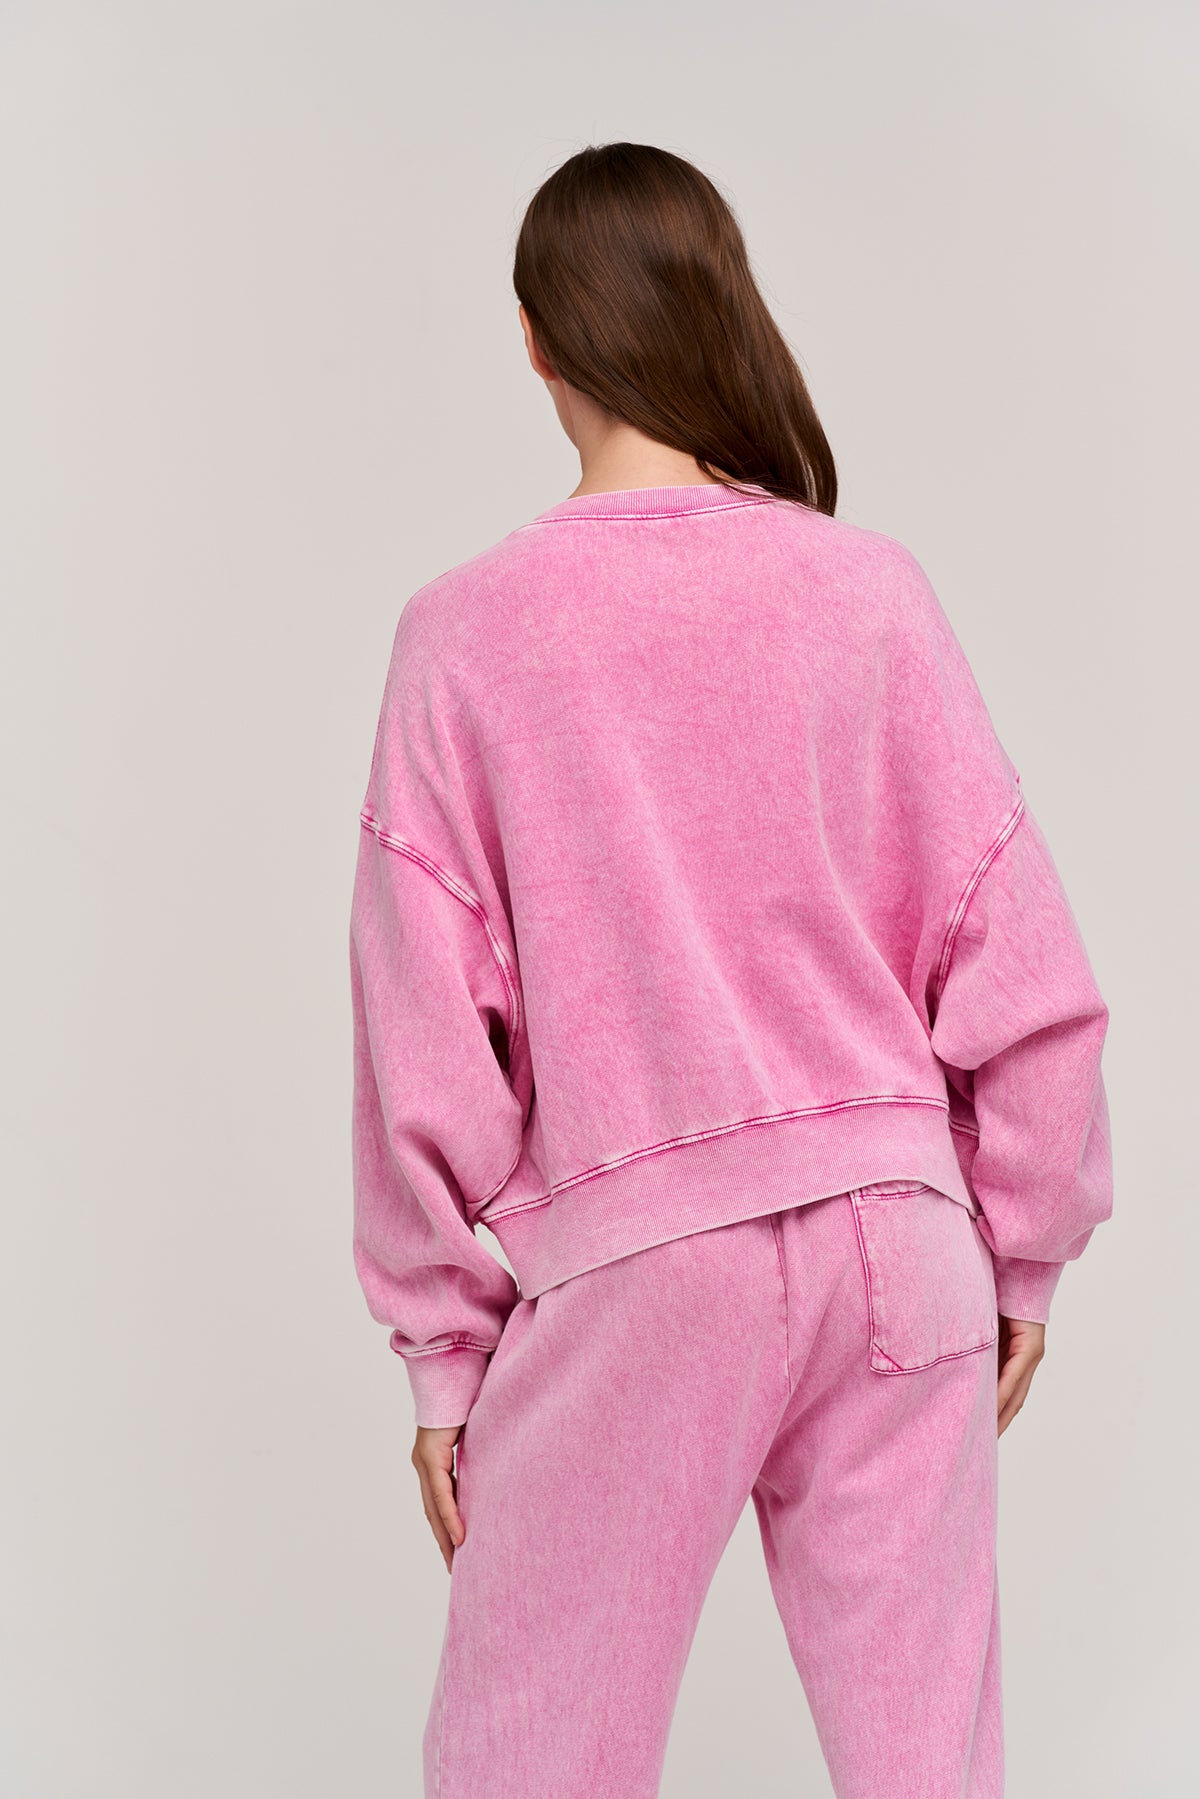   lindsey fleece sweatshirt pink back 